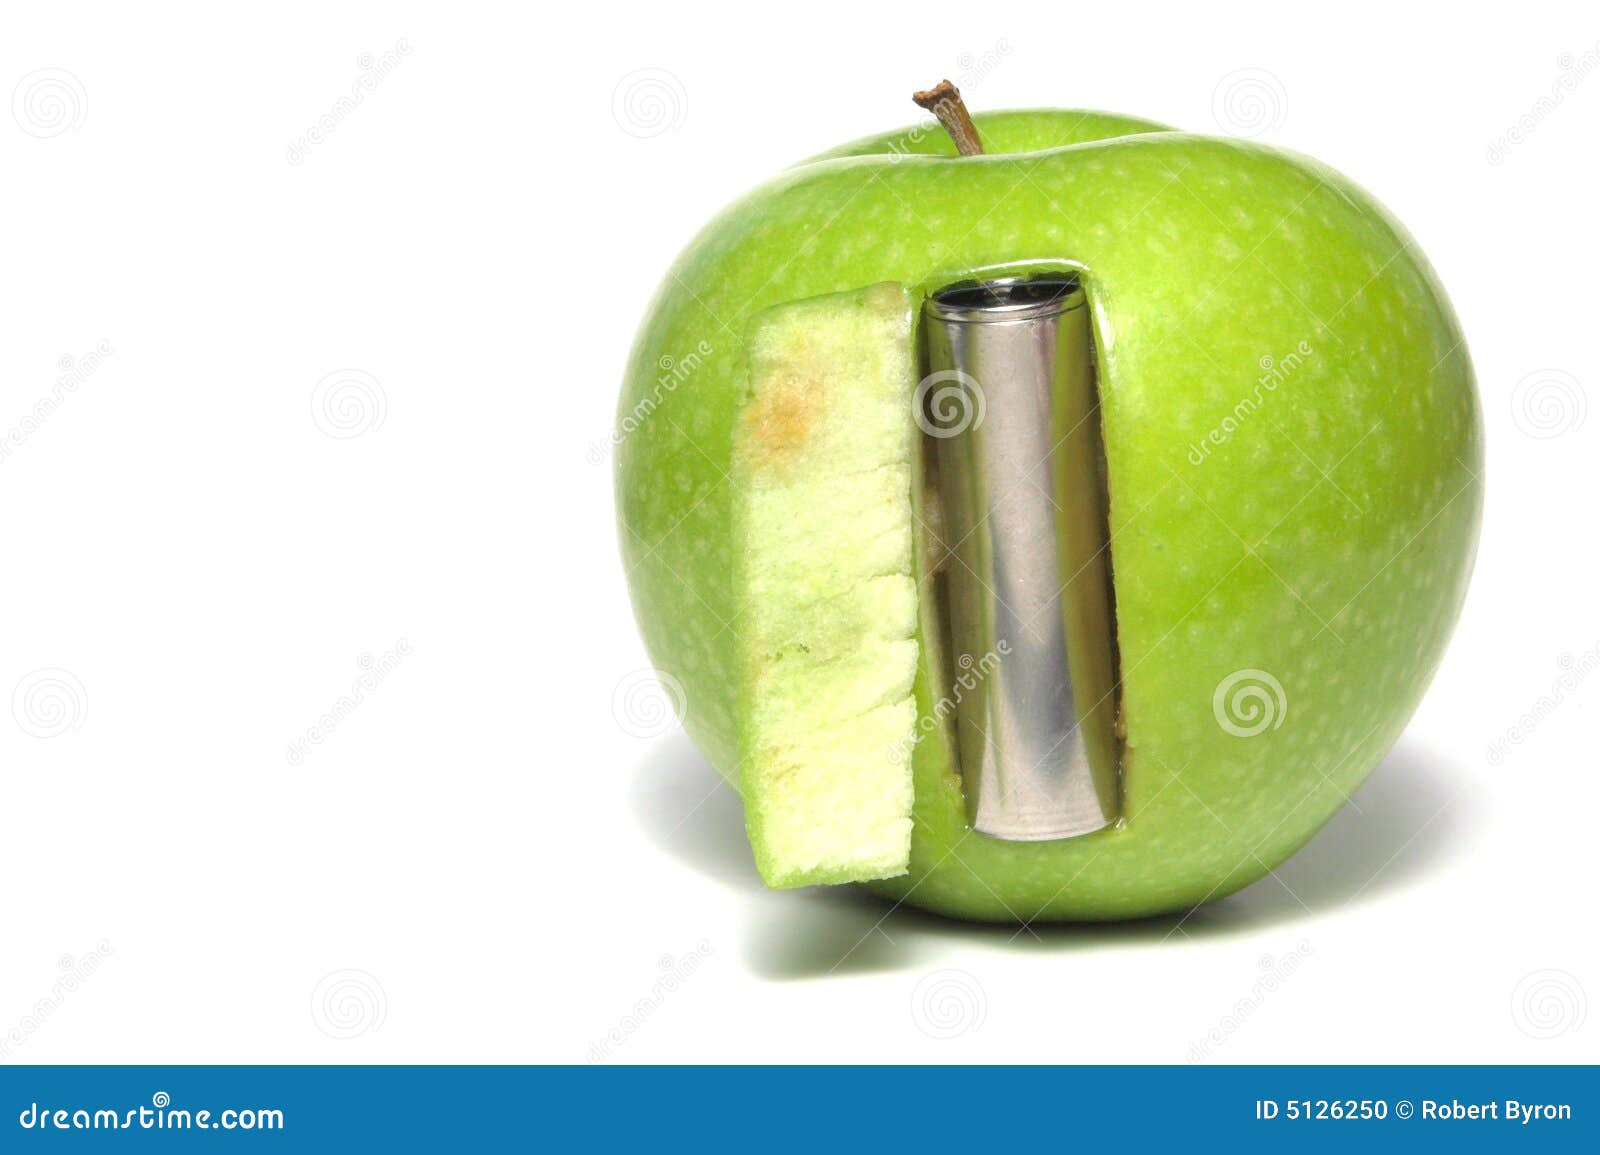 Ηλεκτρική μπαταρία στο μήλο Στοκ Εικόνες - εικόνα από : 5126250